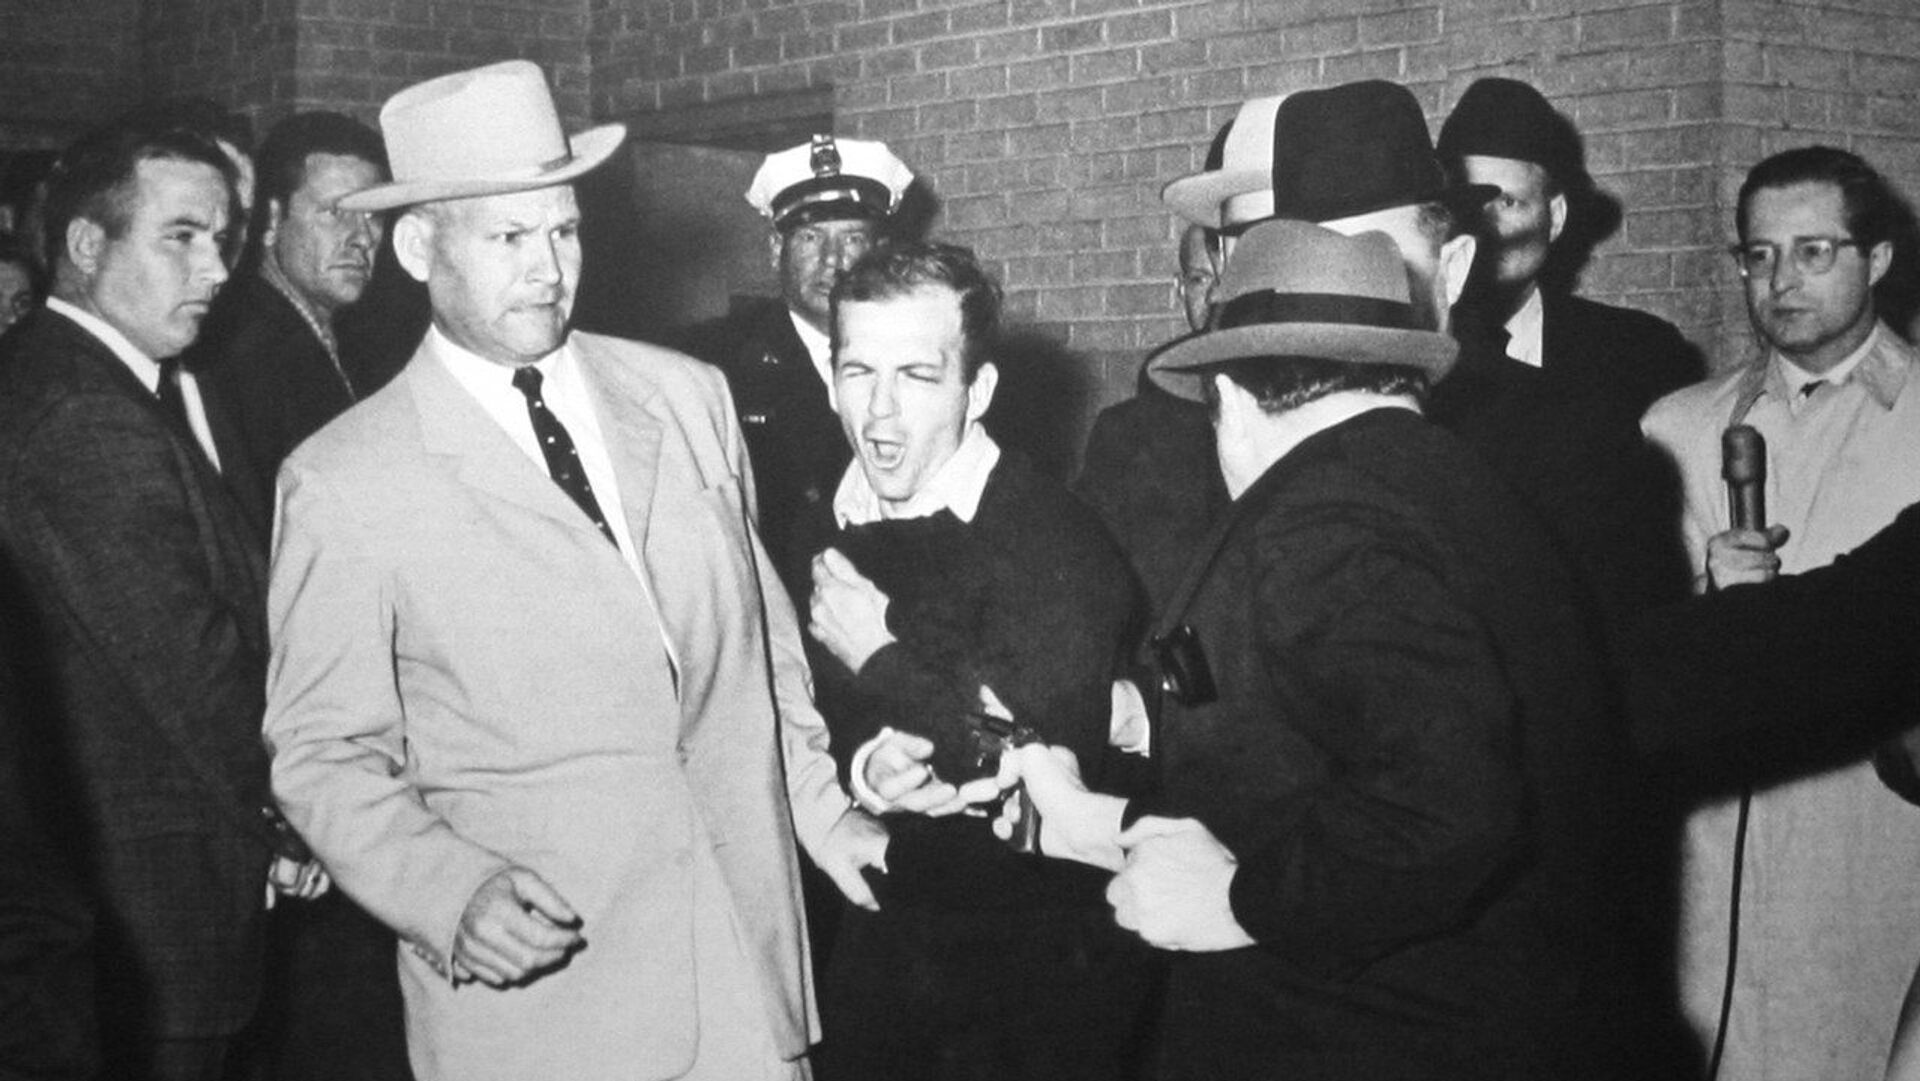 Џек Руби убија Ли Харви Освалда током његовог извођења из полицијске станице у Даласу - Sputnik Србија, 1920, 18.12.2021